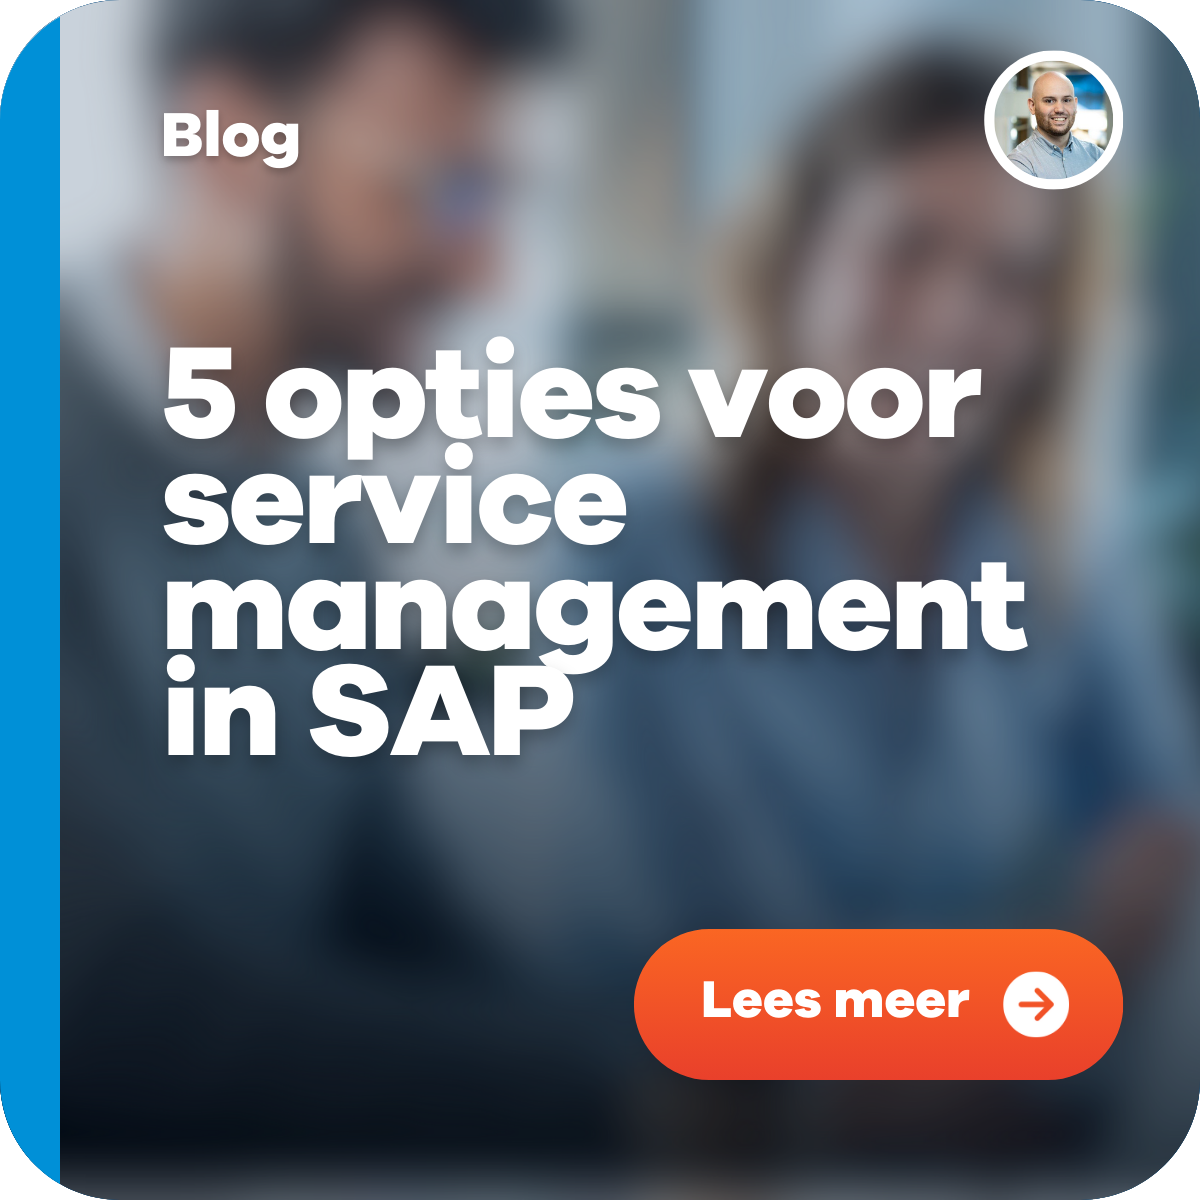 5 opties voor service management in SAP